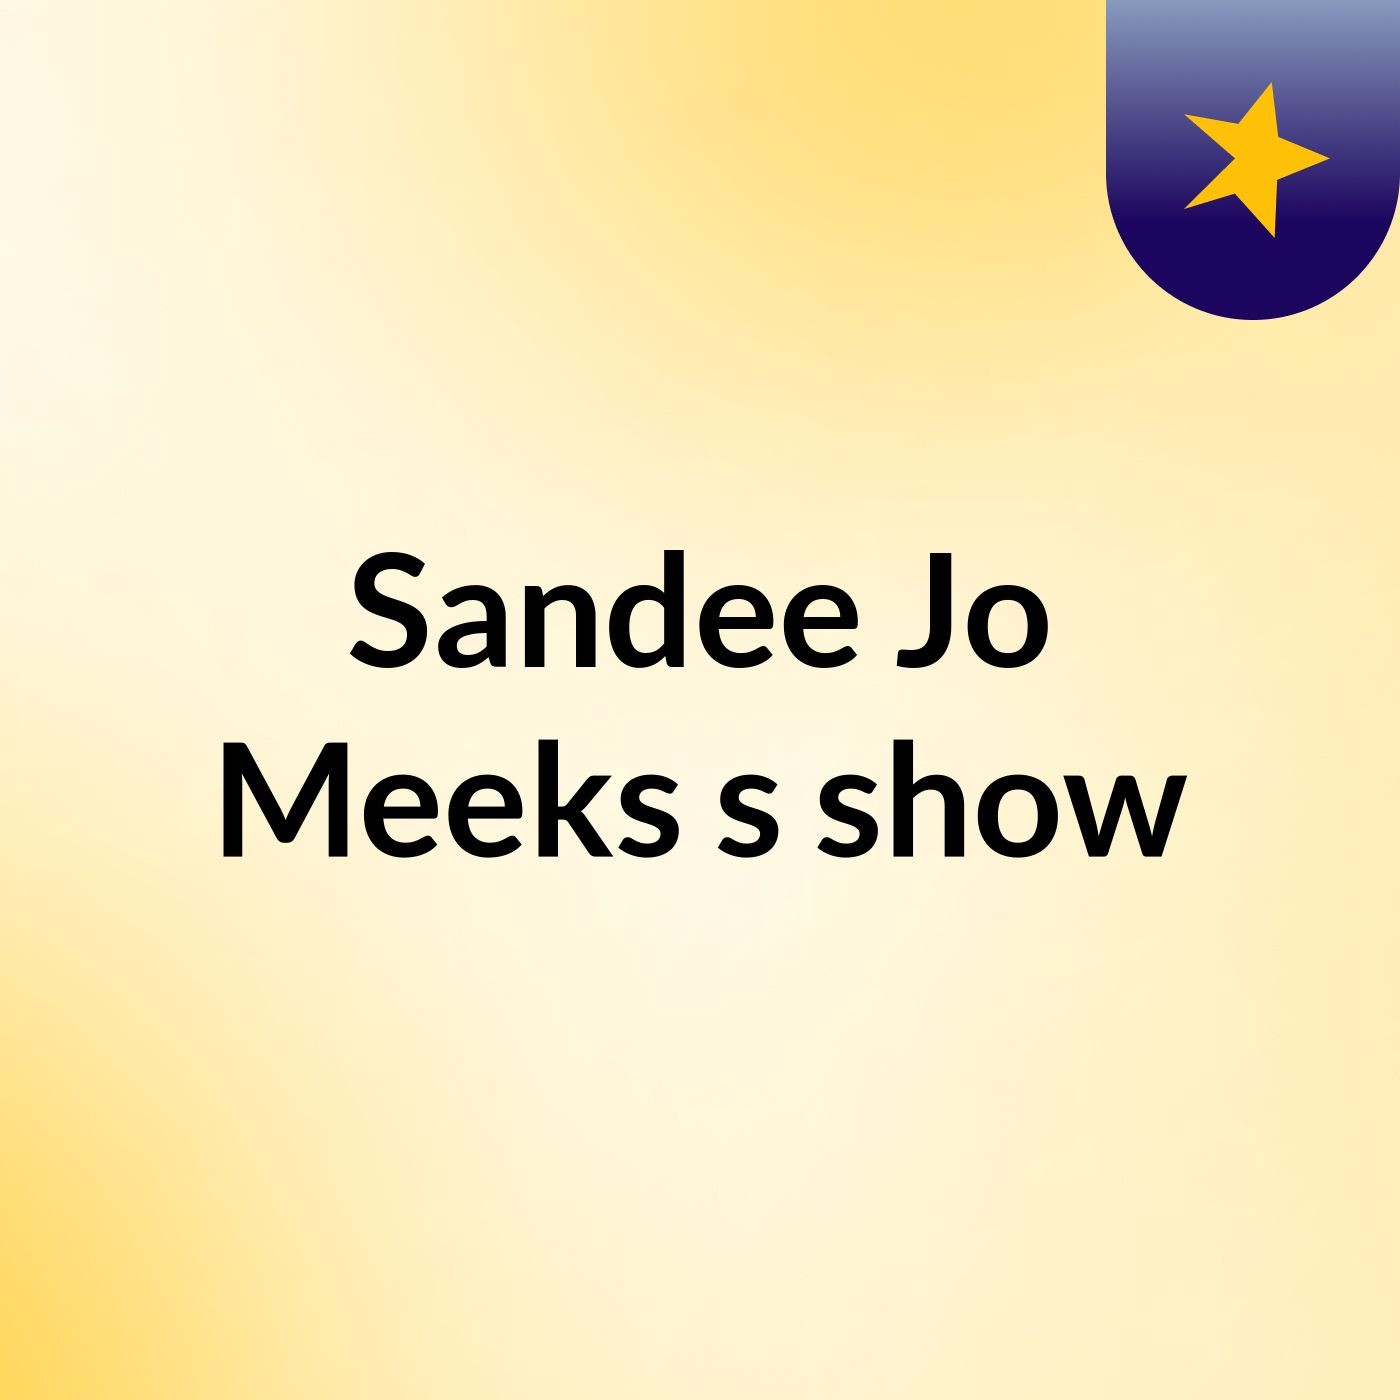 Sandee Jo Meeks's show